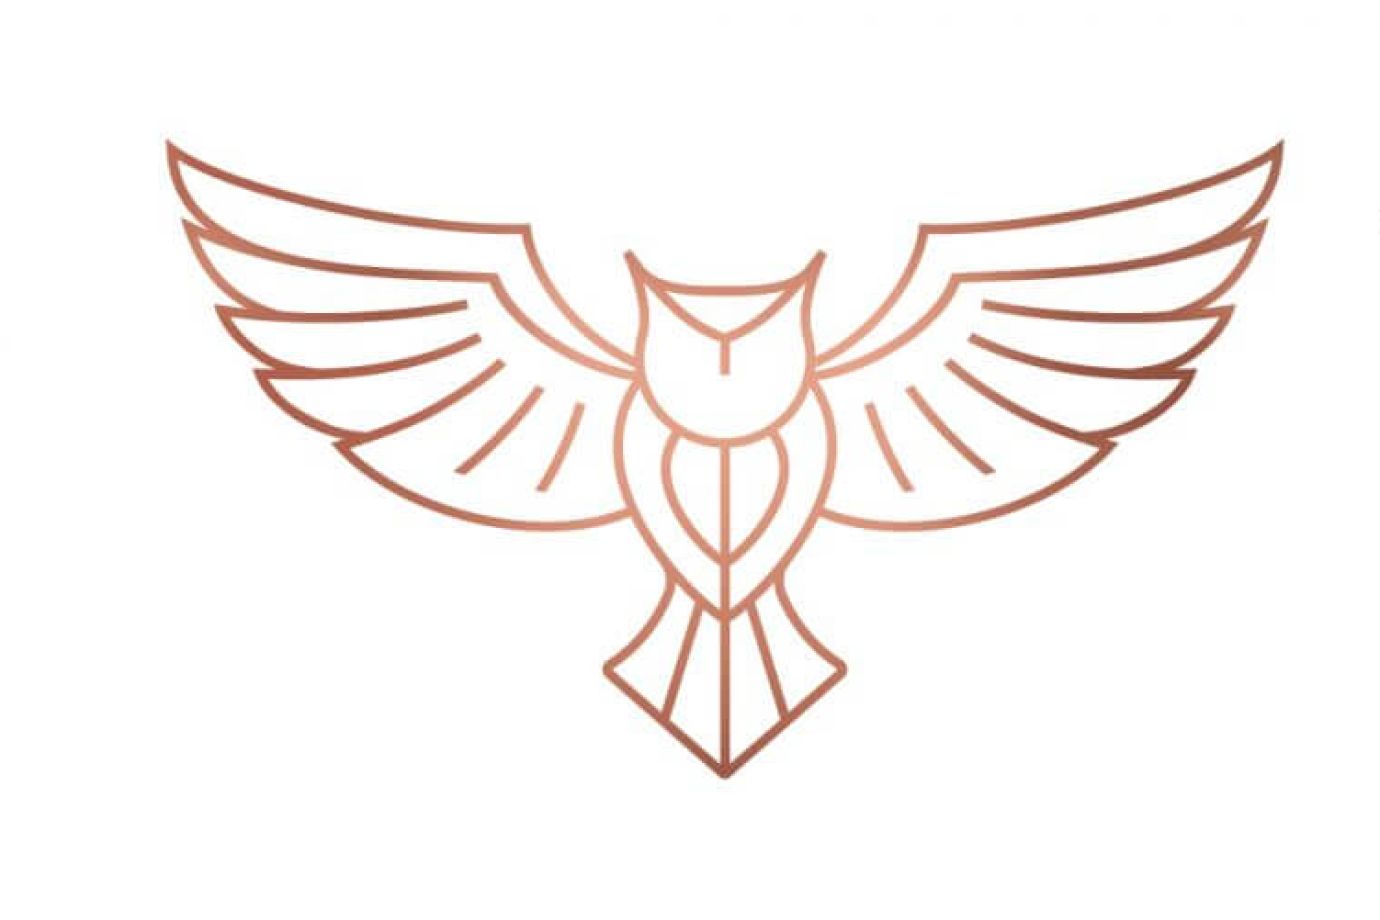 Verolift logo